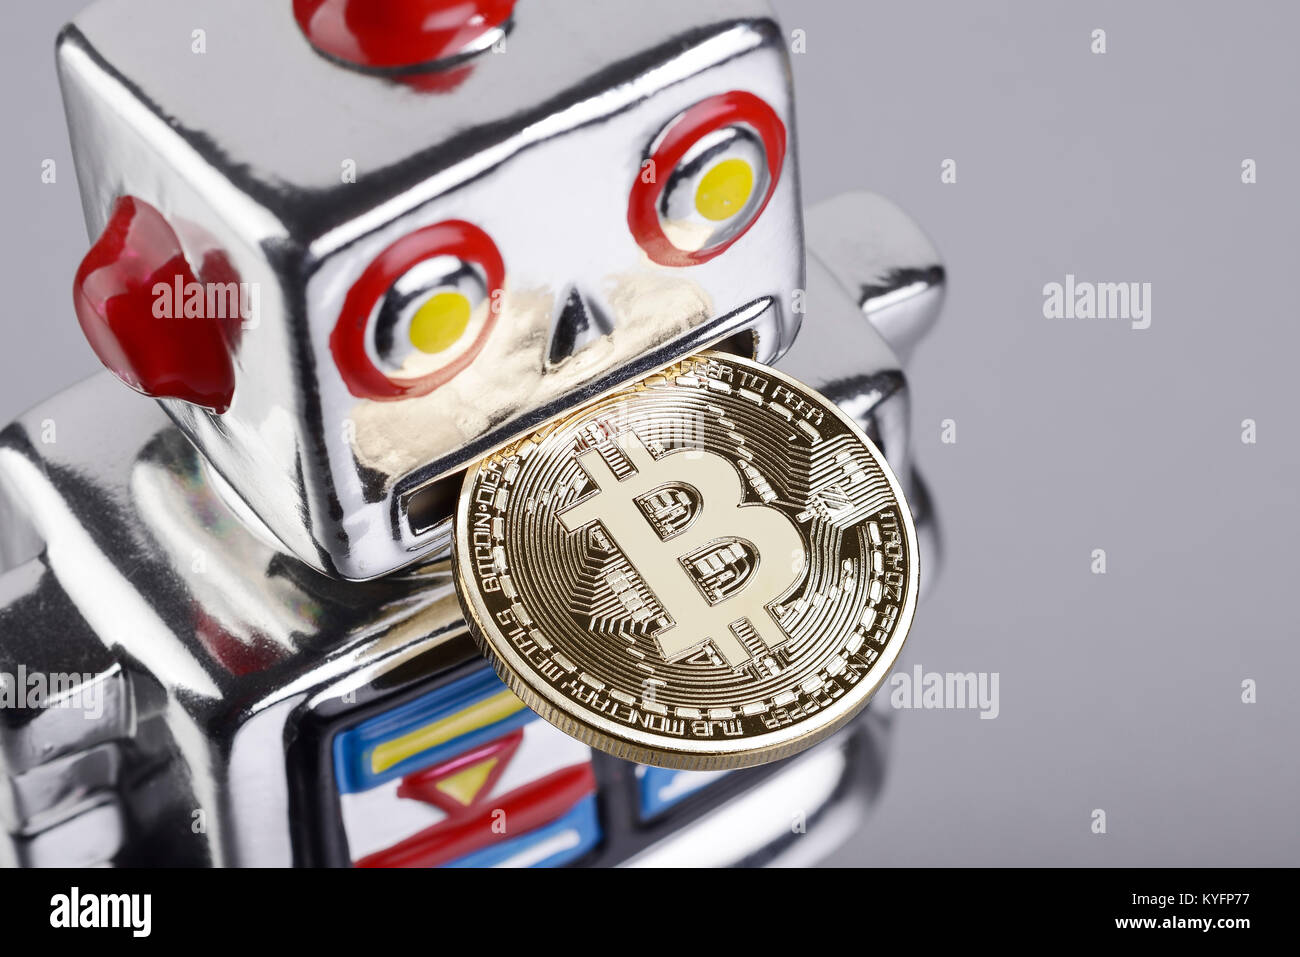 Silver robot shaped money box eating a bitcoin coin Stock Photo